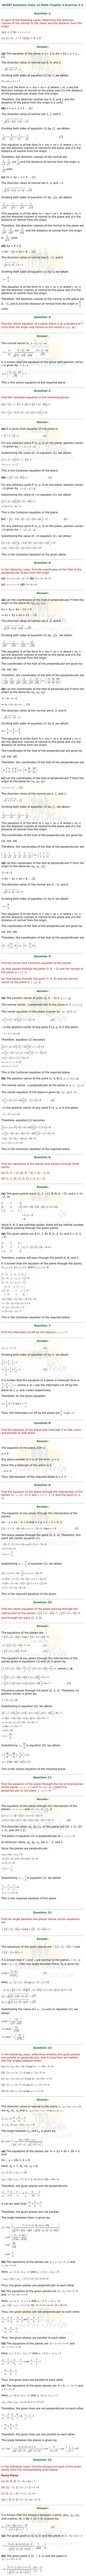 ex.11.3 Class 12 Math Chapter 11 ncert solutions